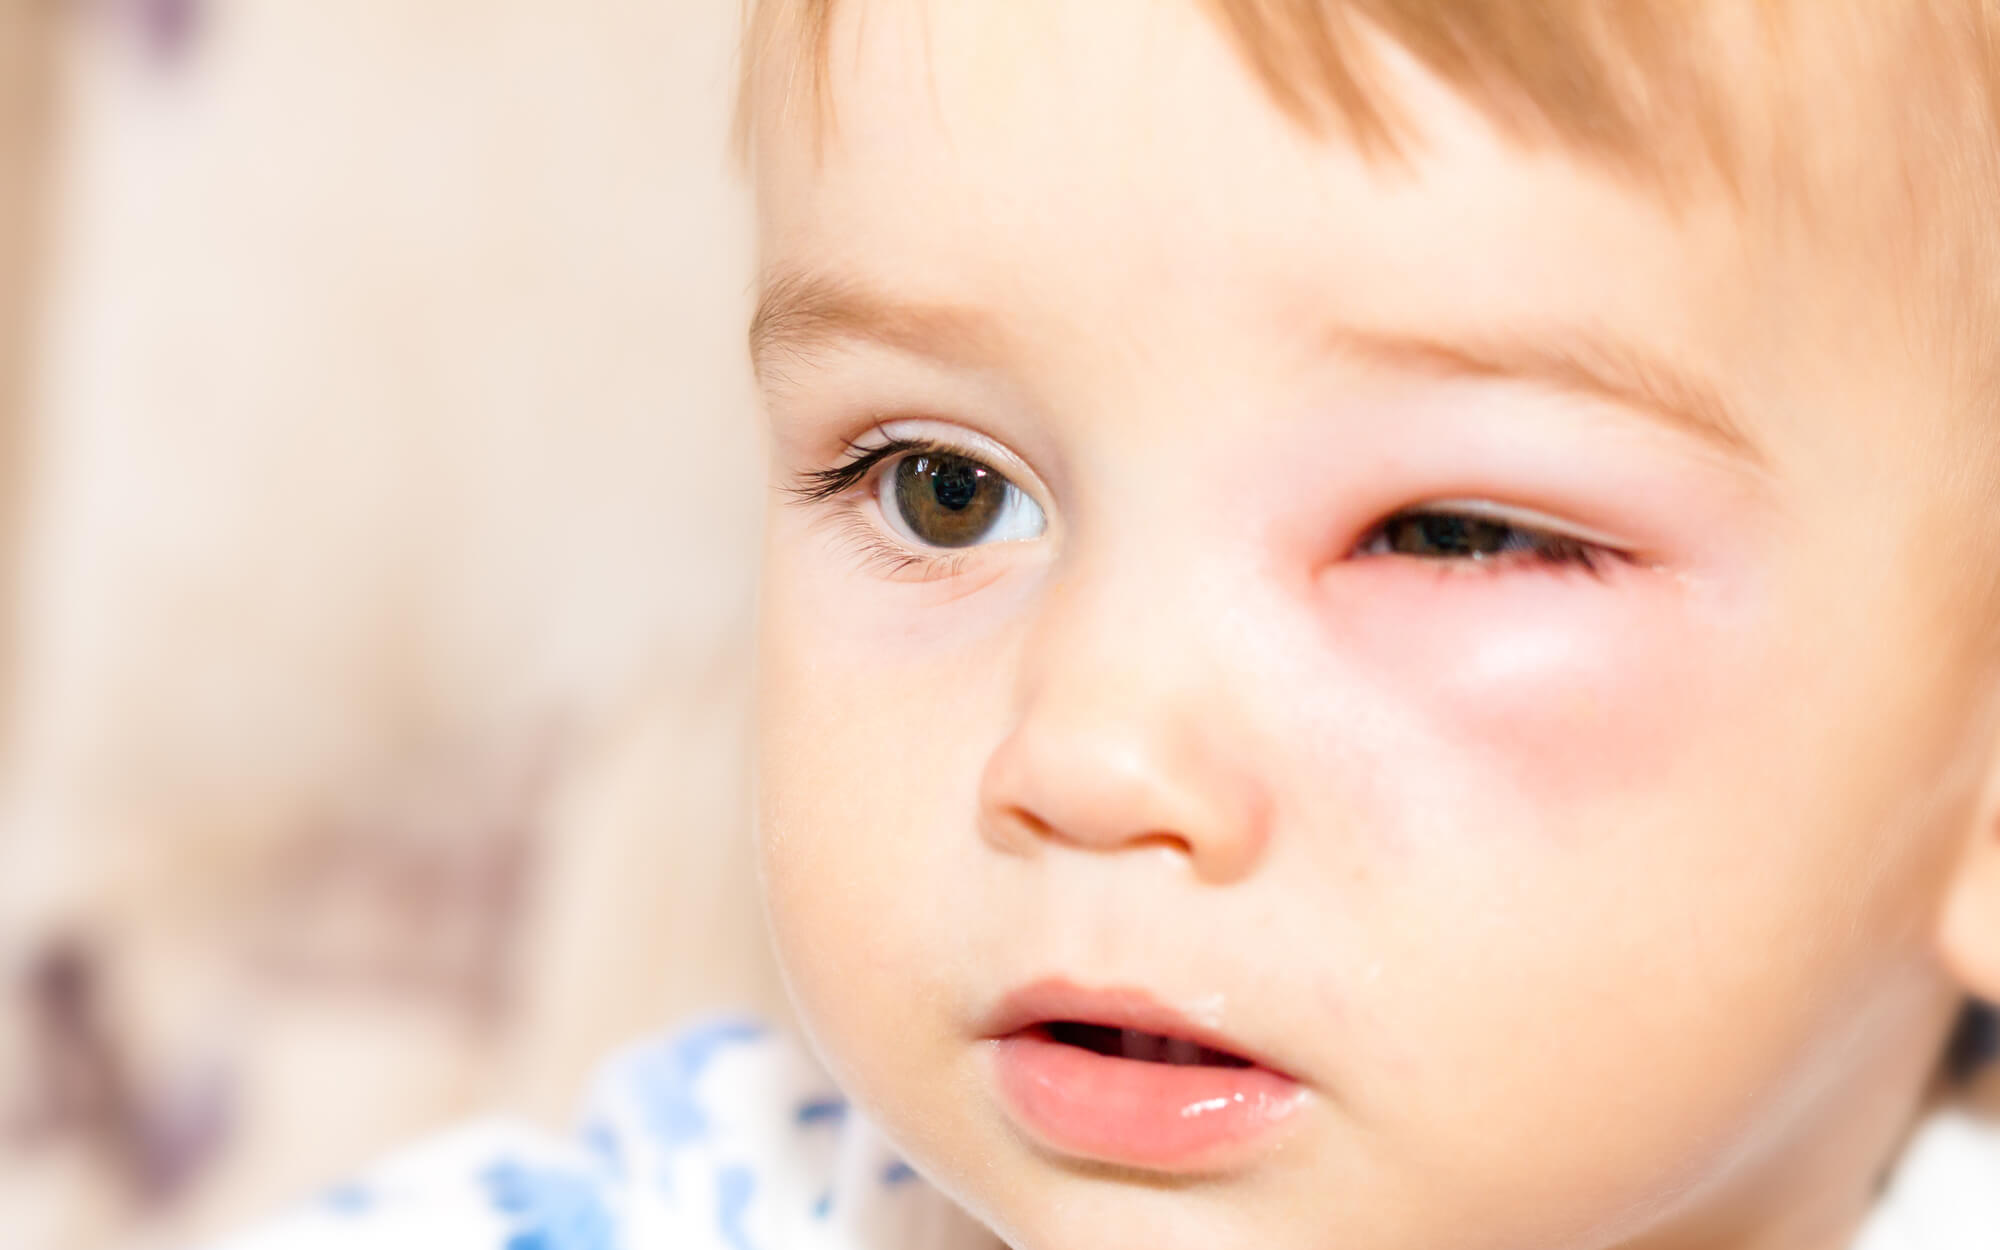 Bệnh đau mắt đỏ là một bệnh không quá nguy hiểm nếu biết điều trị